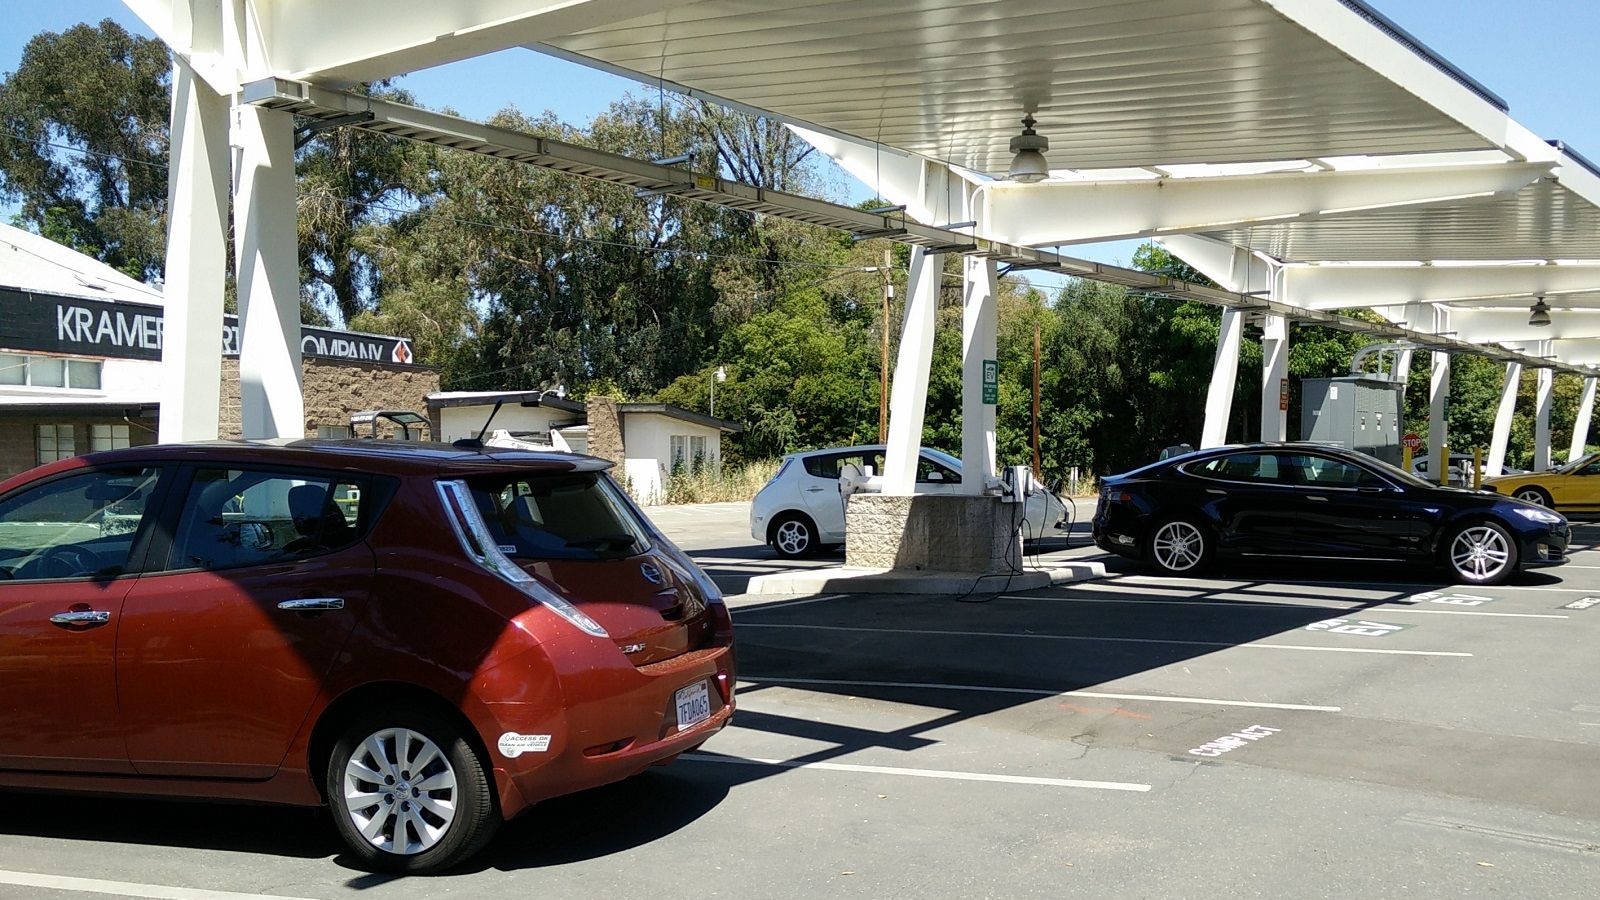 Sacramento Municipal Utility District electric car DC fast-charging site, Jun 2015  [George Parrott]